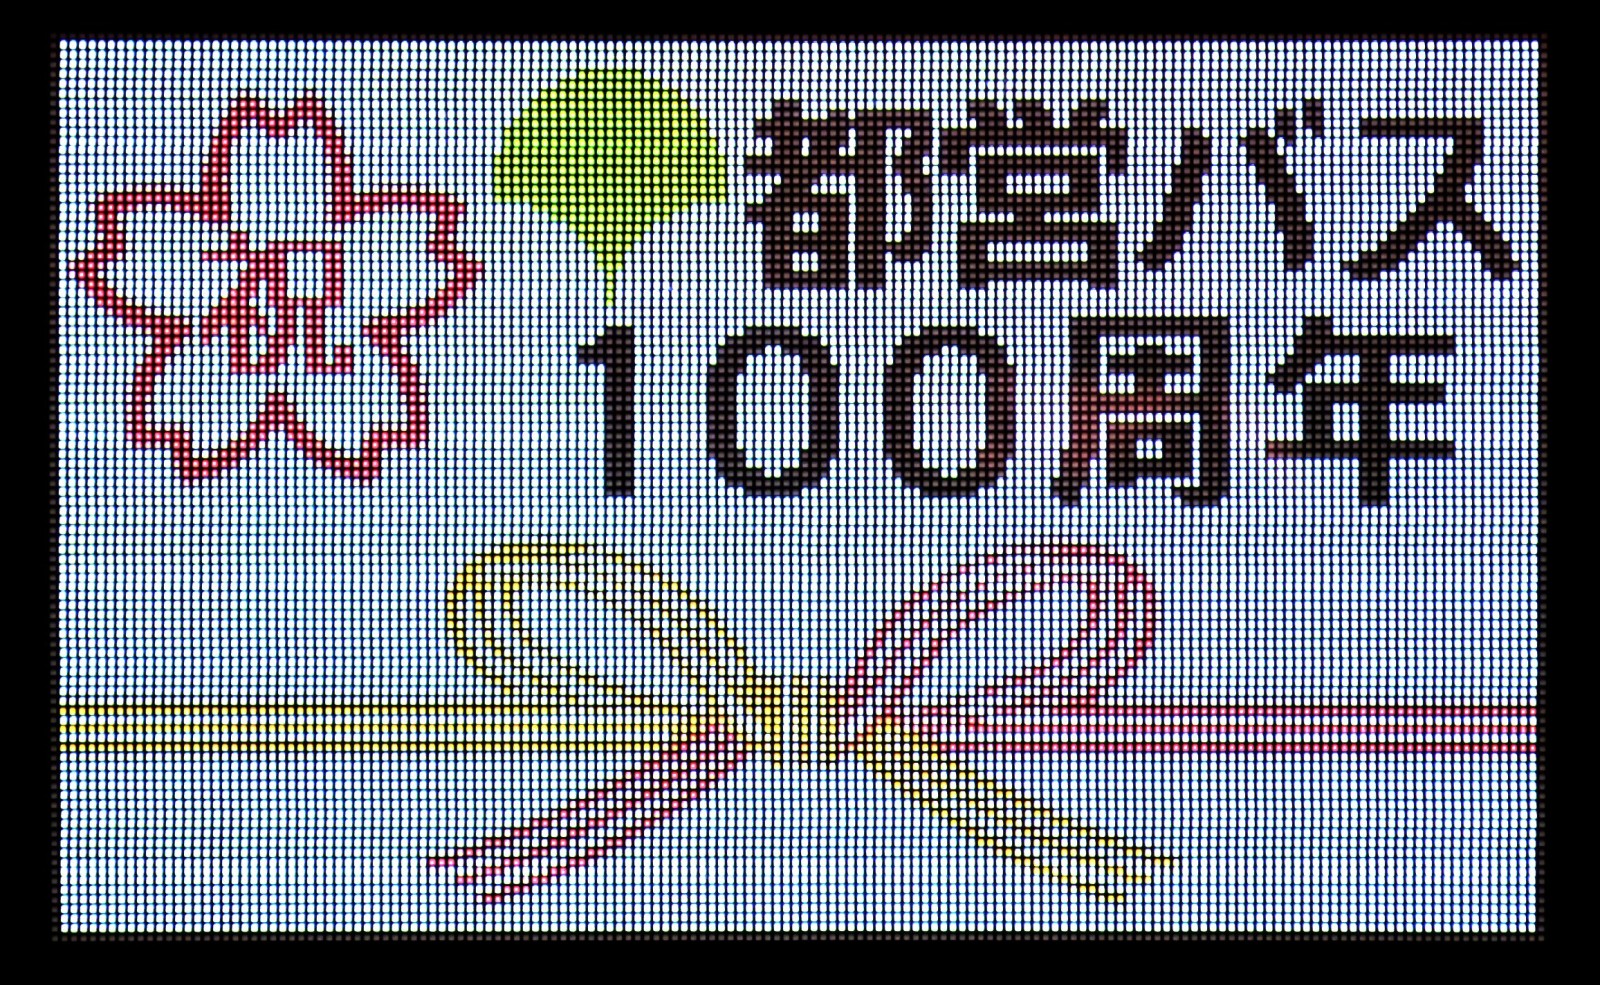 1/20、100周年イベントを東京タワーで開催